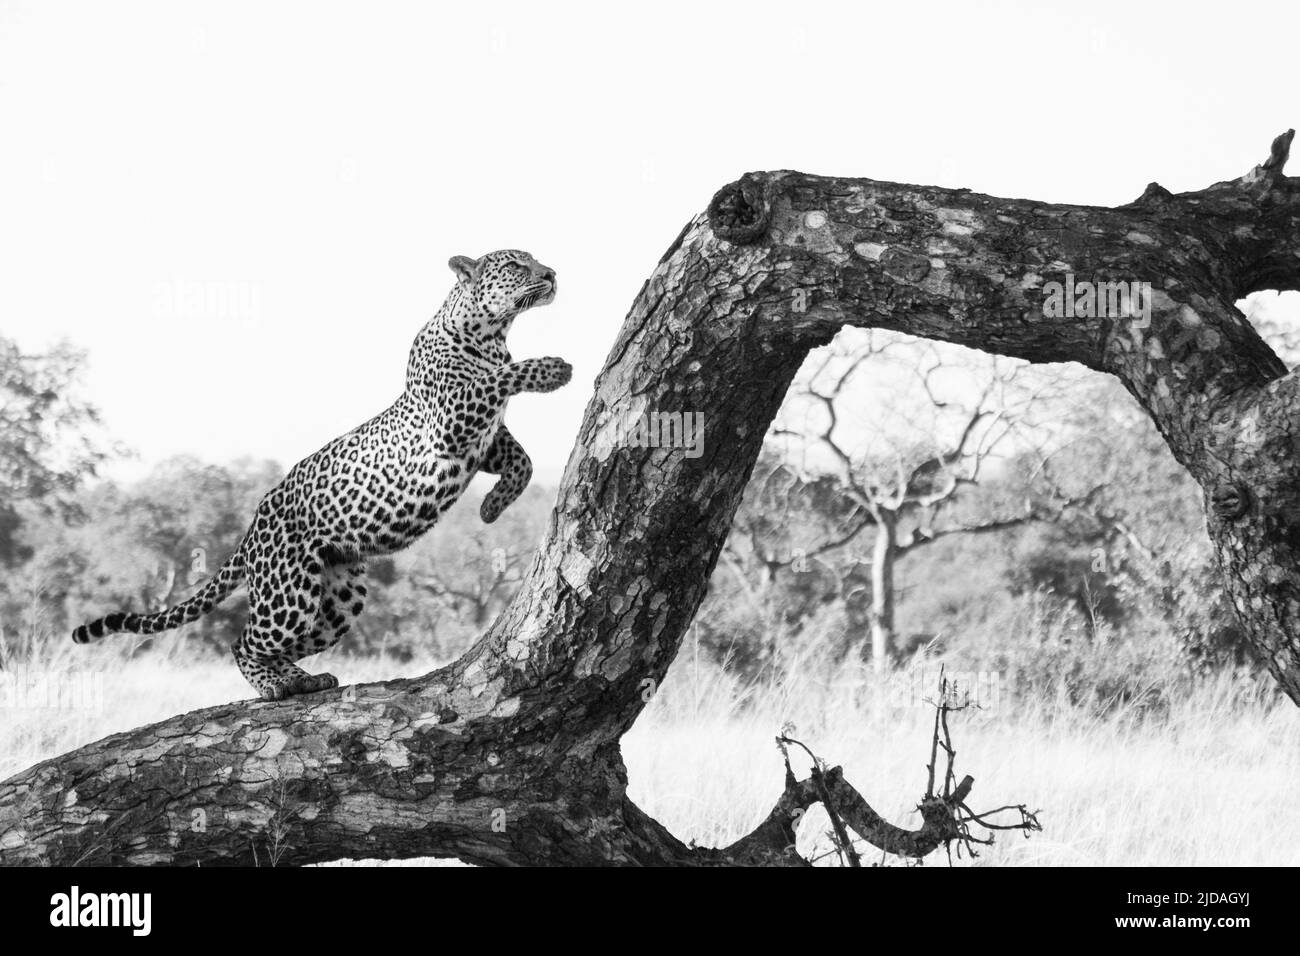 Ein Leopard, Panthera pardus, springt auf einen toten Baum, in schwarz und weiß. Stockfoto